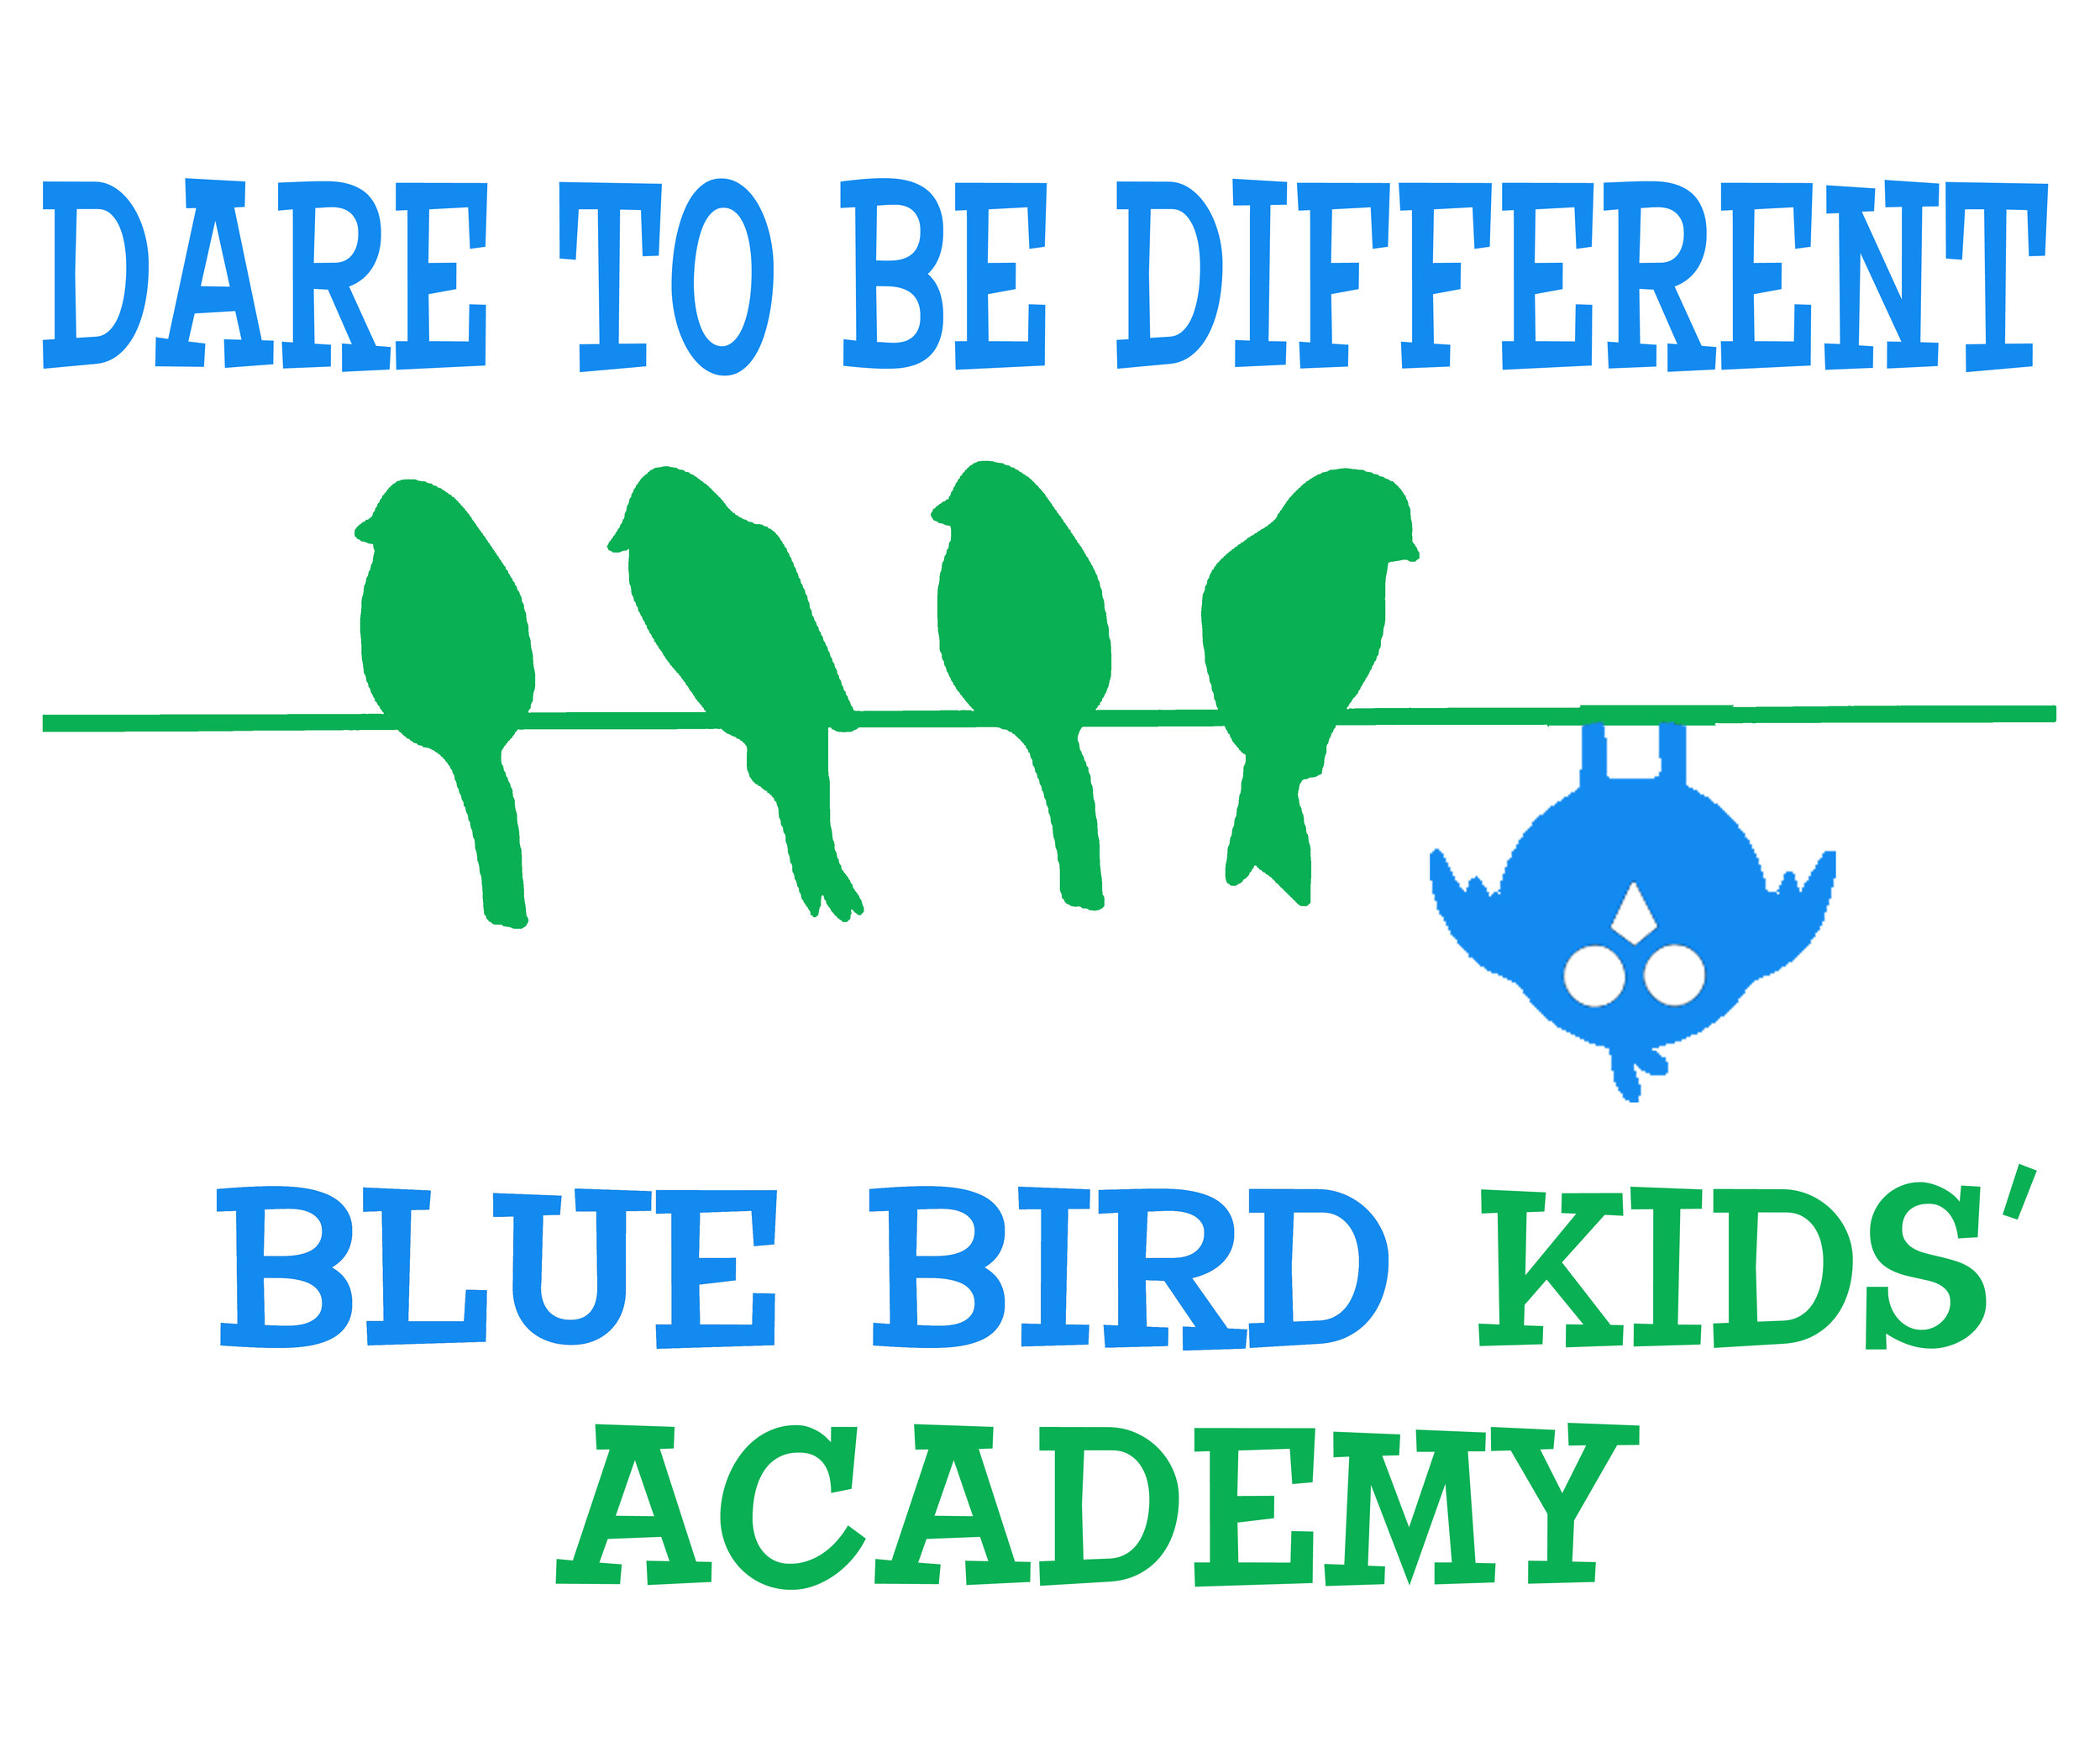 Contact Blue Bird Kids Academy